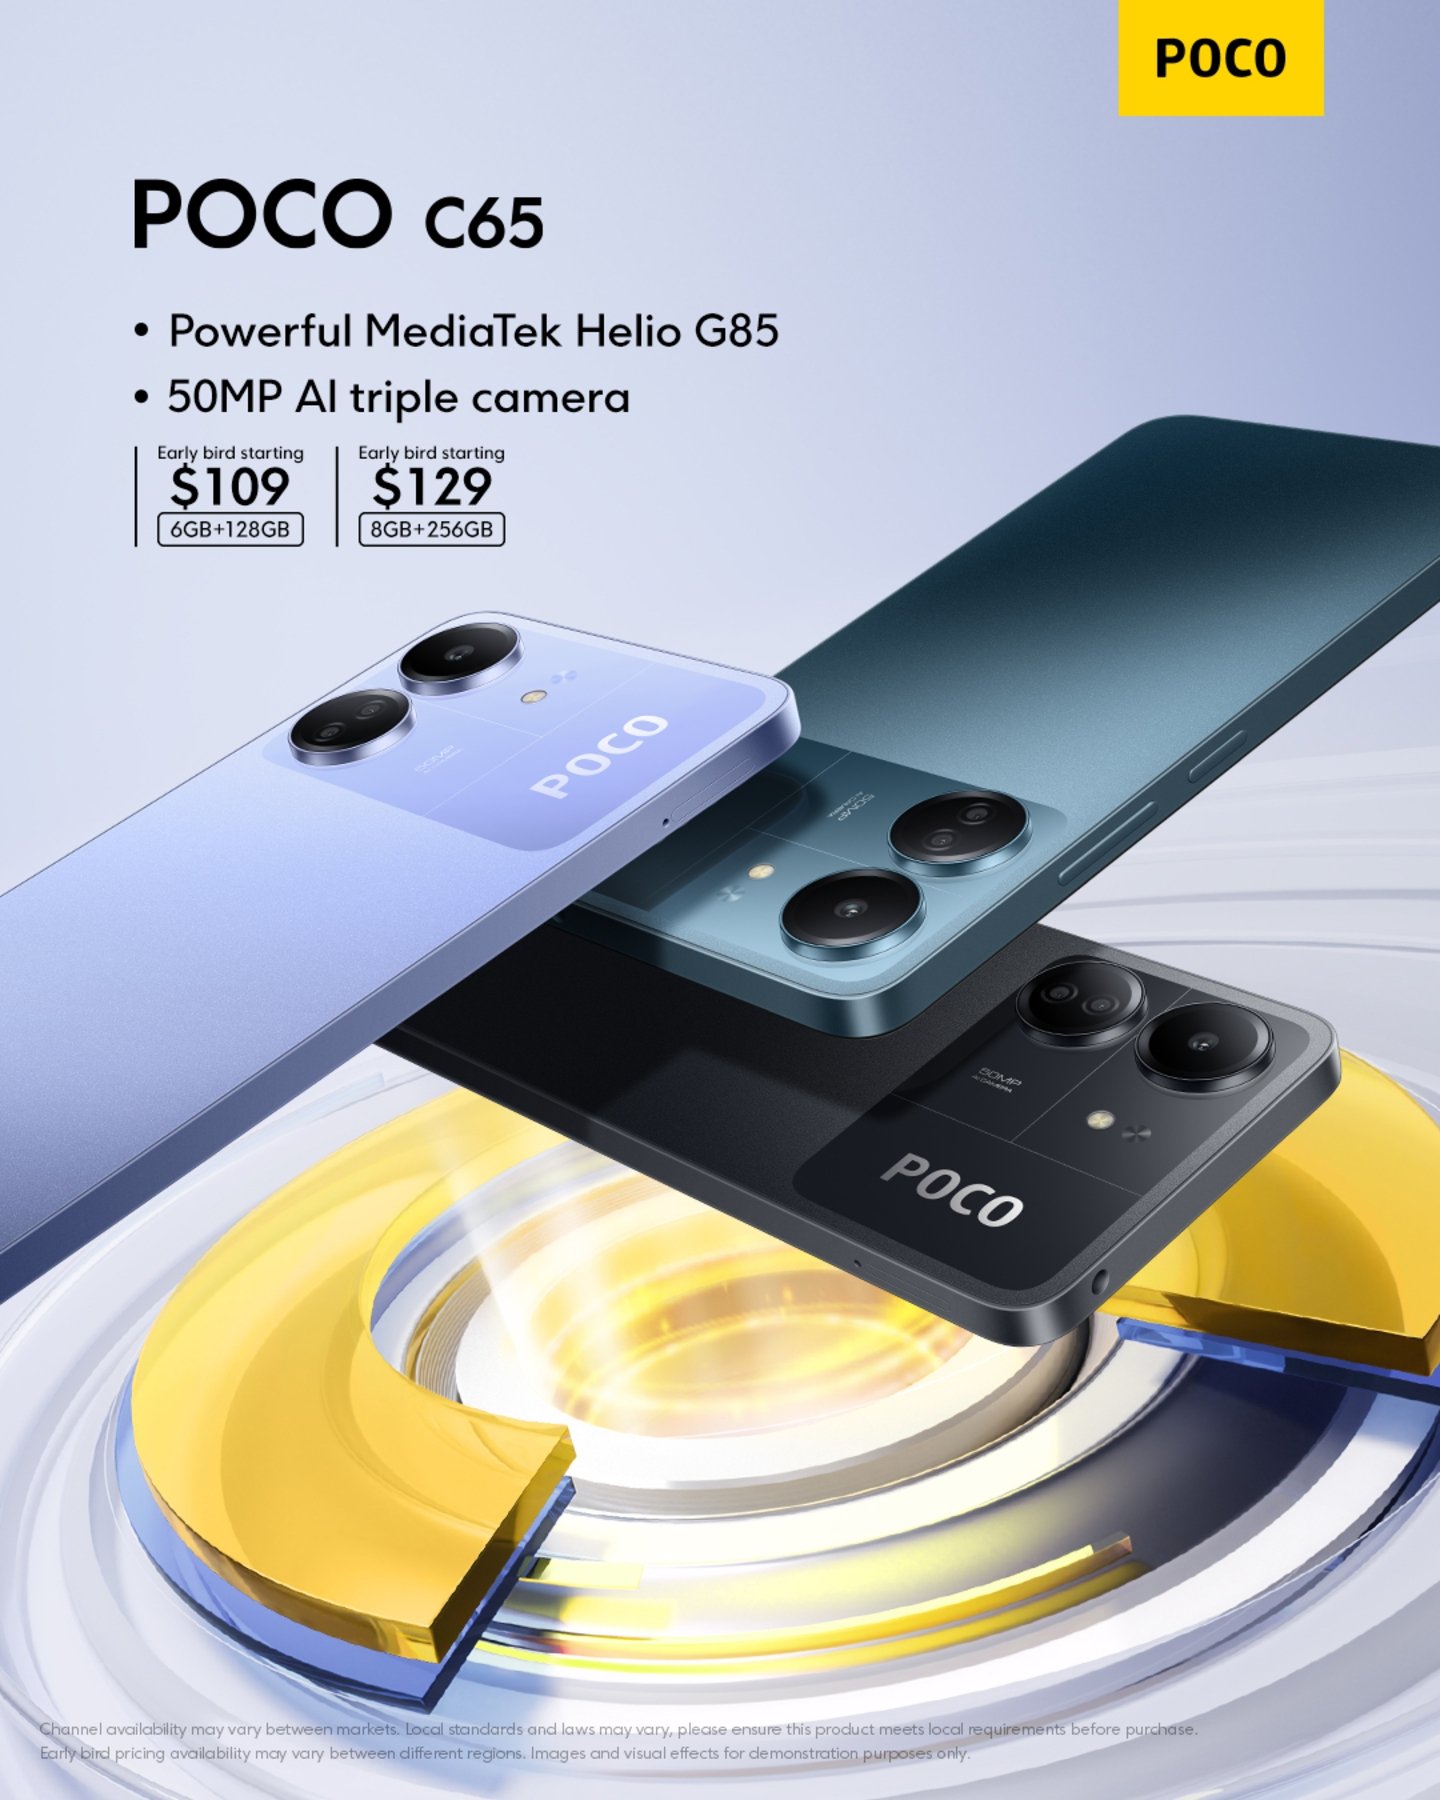 Nuevo POCO C65: el móvil más económico de POCO llegará con procesador MediaTek y cámara de 50 MP